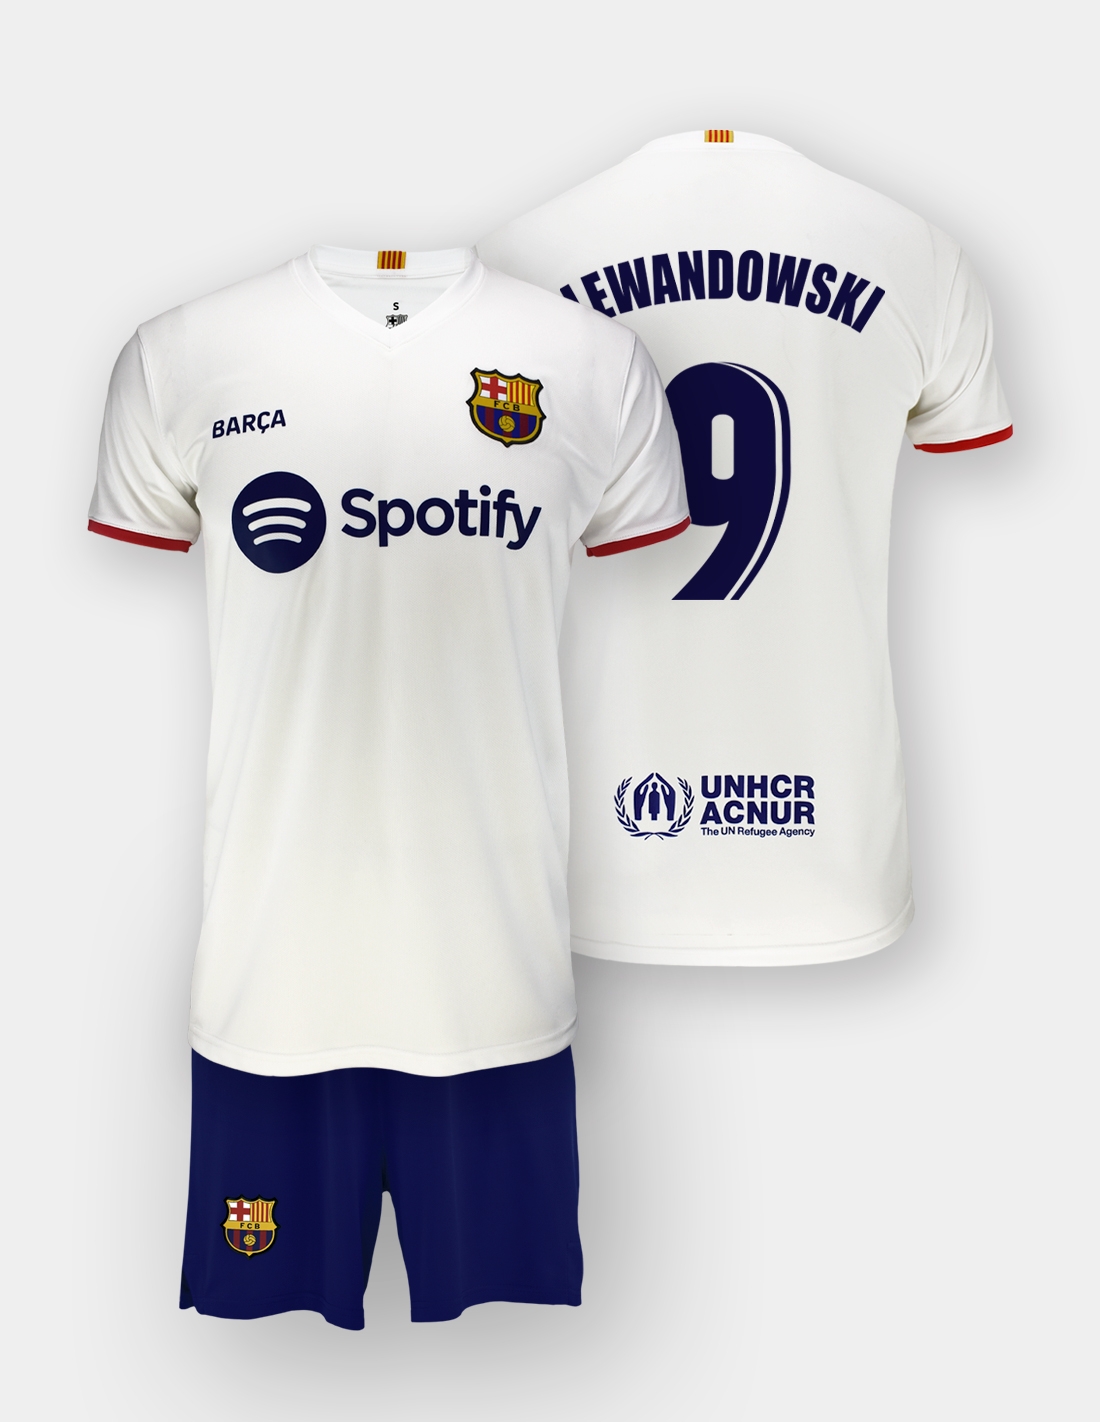 Camiseta oficial Barça | 2ª camiseta barça | oficial camiseta segunda  barcelona